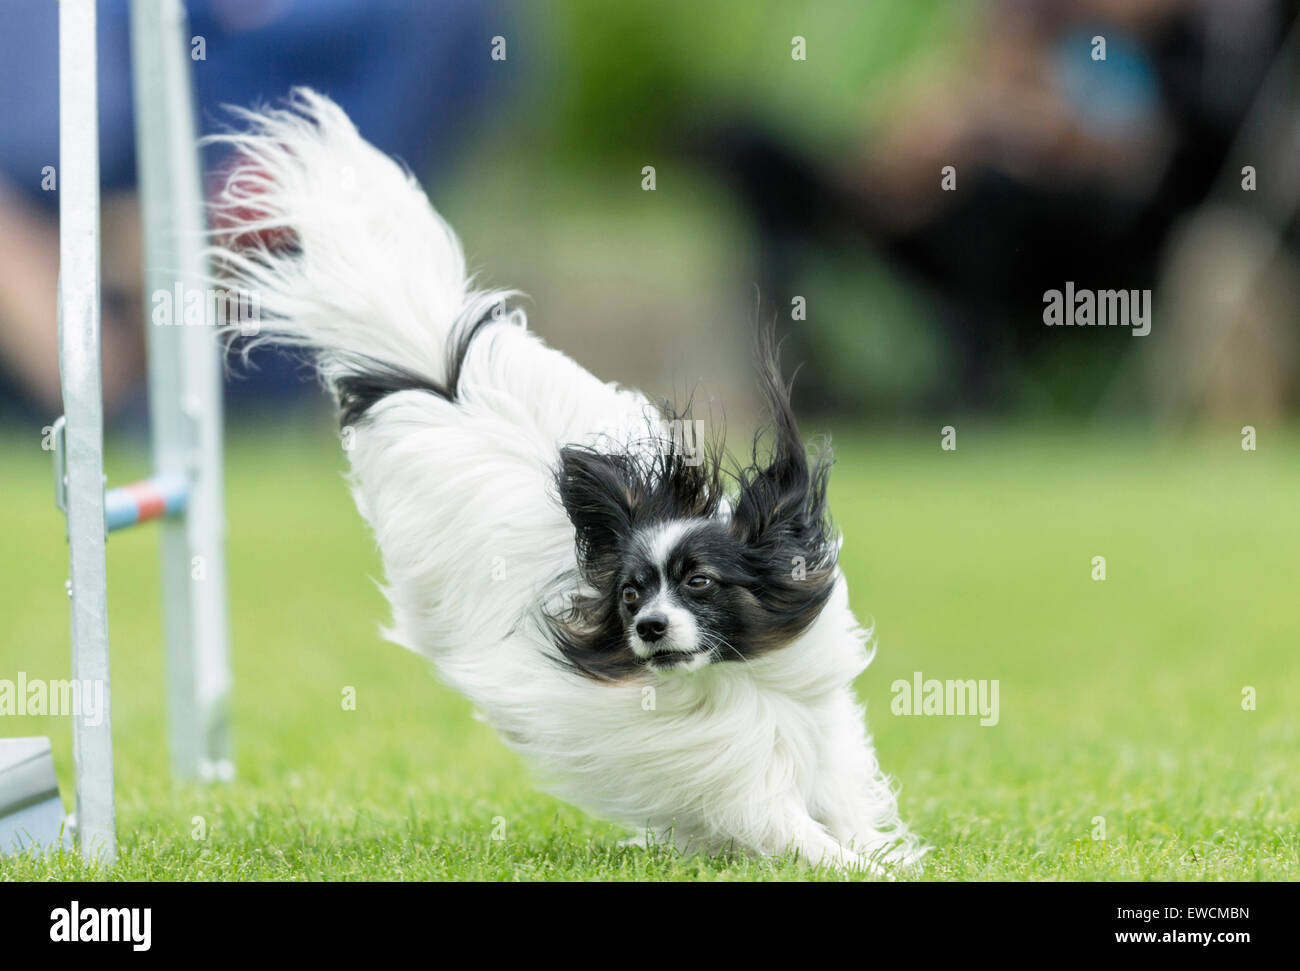 Petit Toy Spaniel sauter par dessus un obstacle dans un parcours d'agilité. Allemagne Banque D'Images